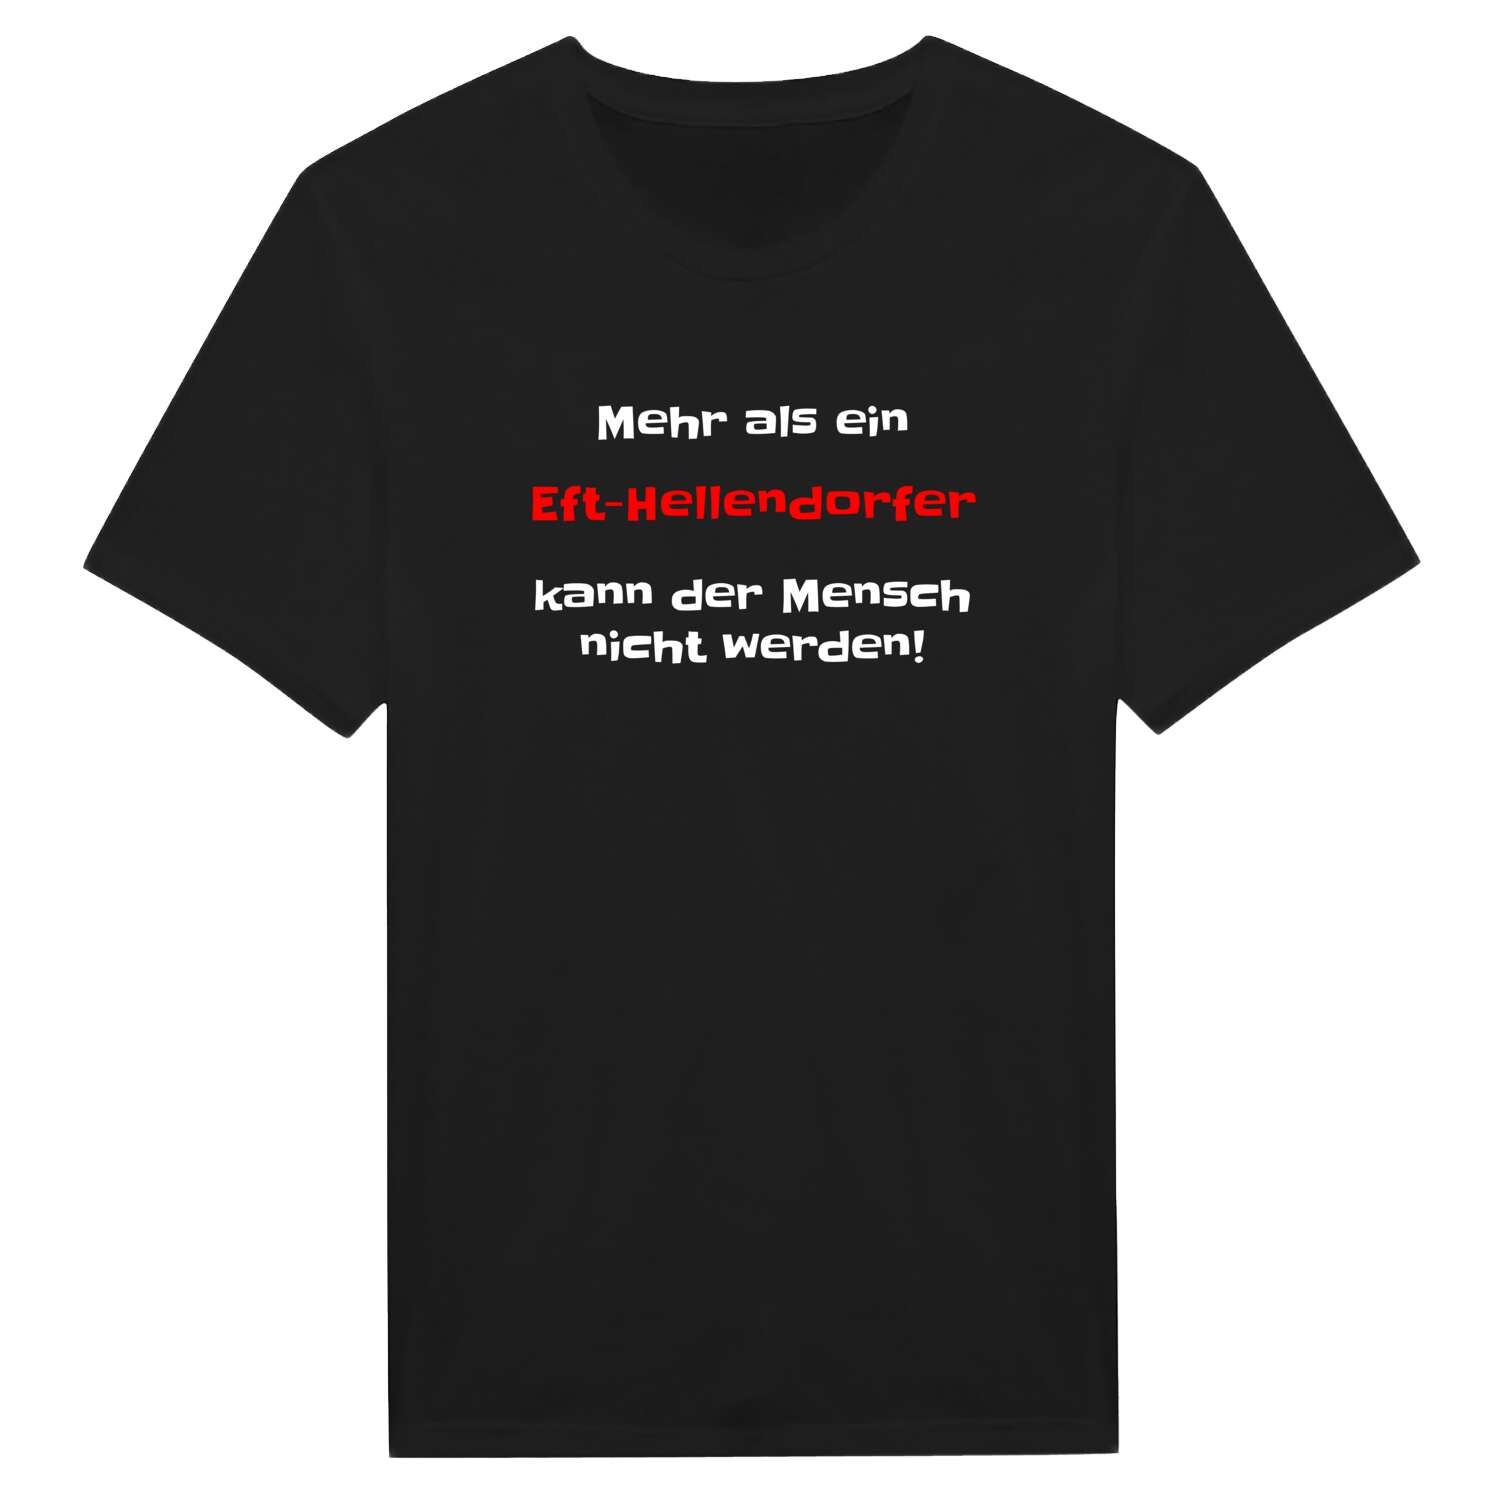 Eft-Hellendorf T-Shirt »Mehr als ein«